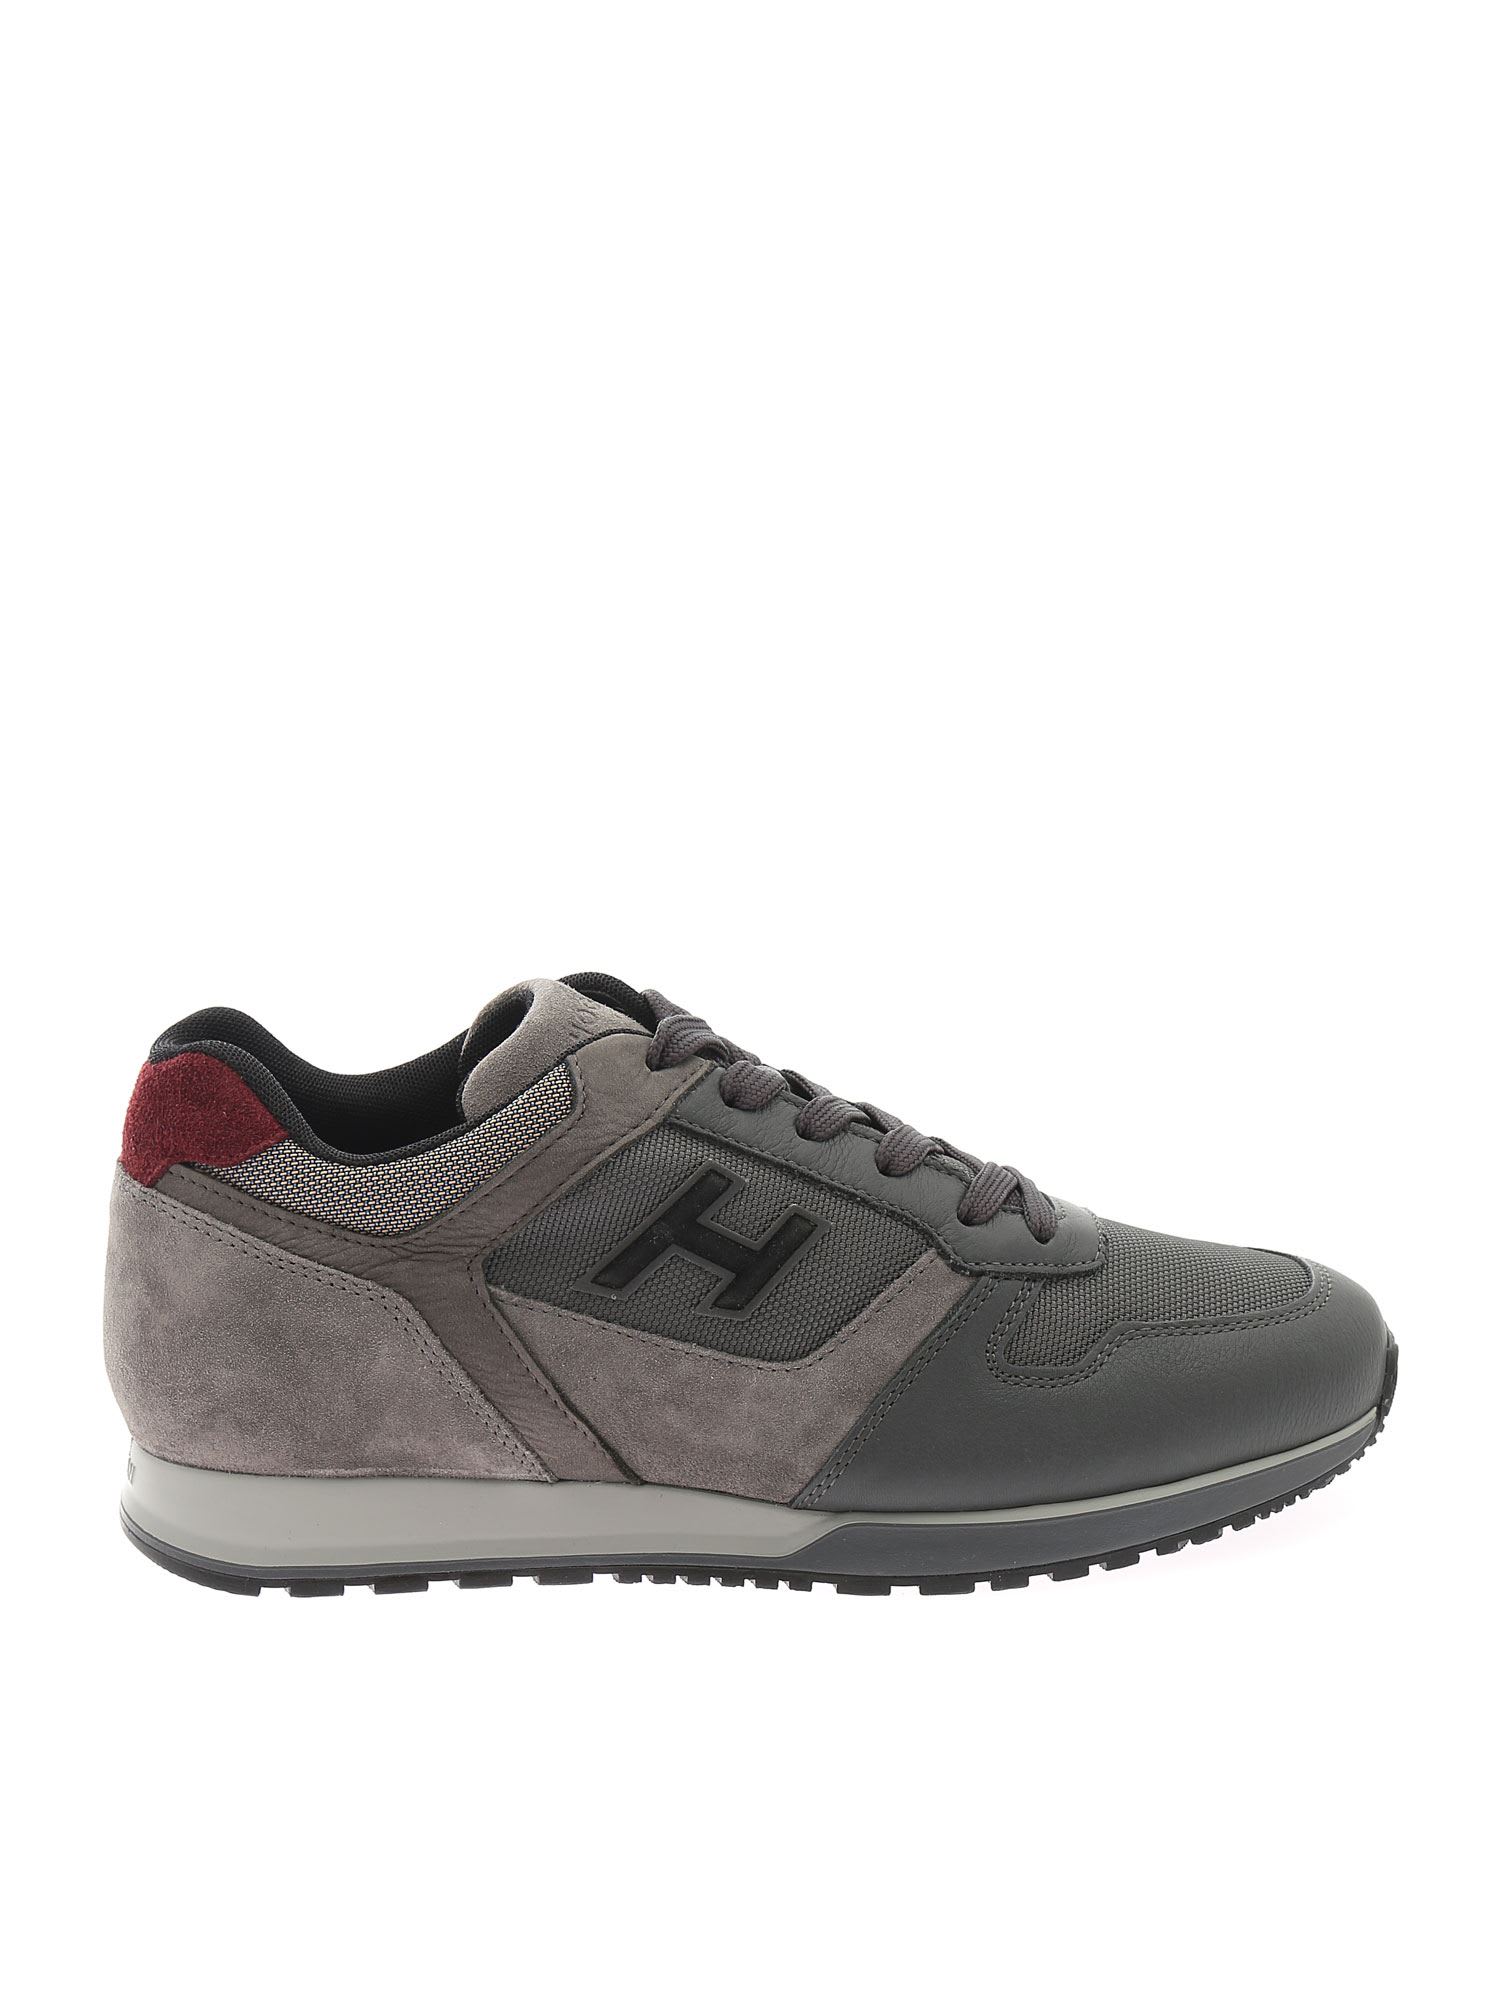 Hogan Sneakers H321 Hxm3210y860qd1816f